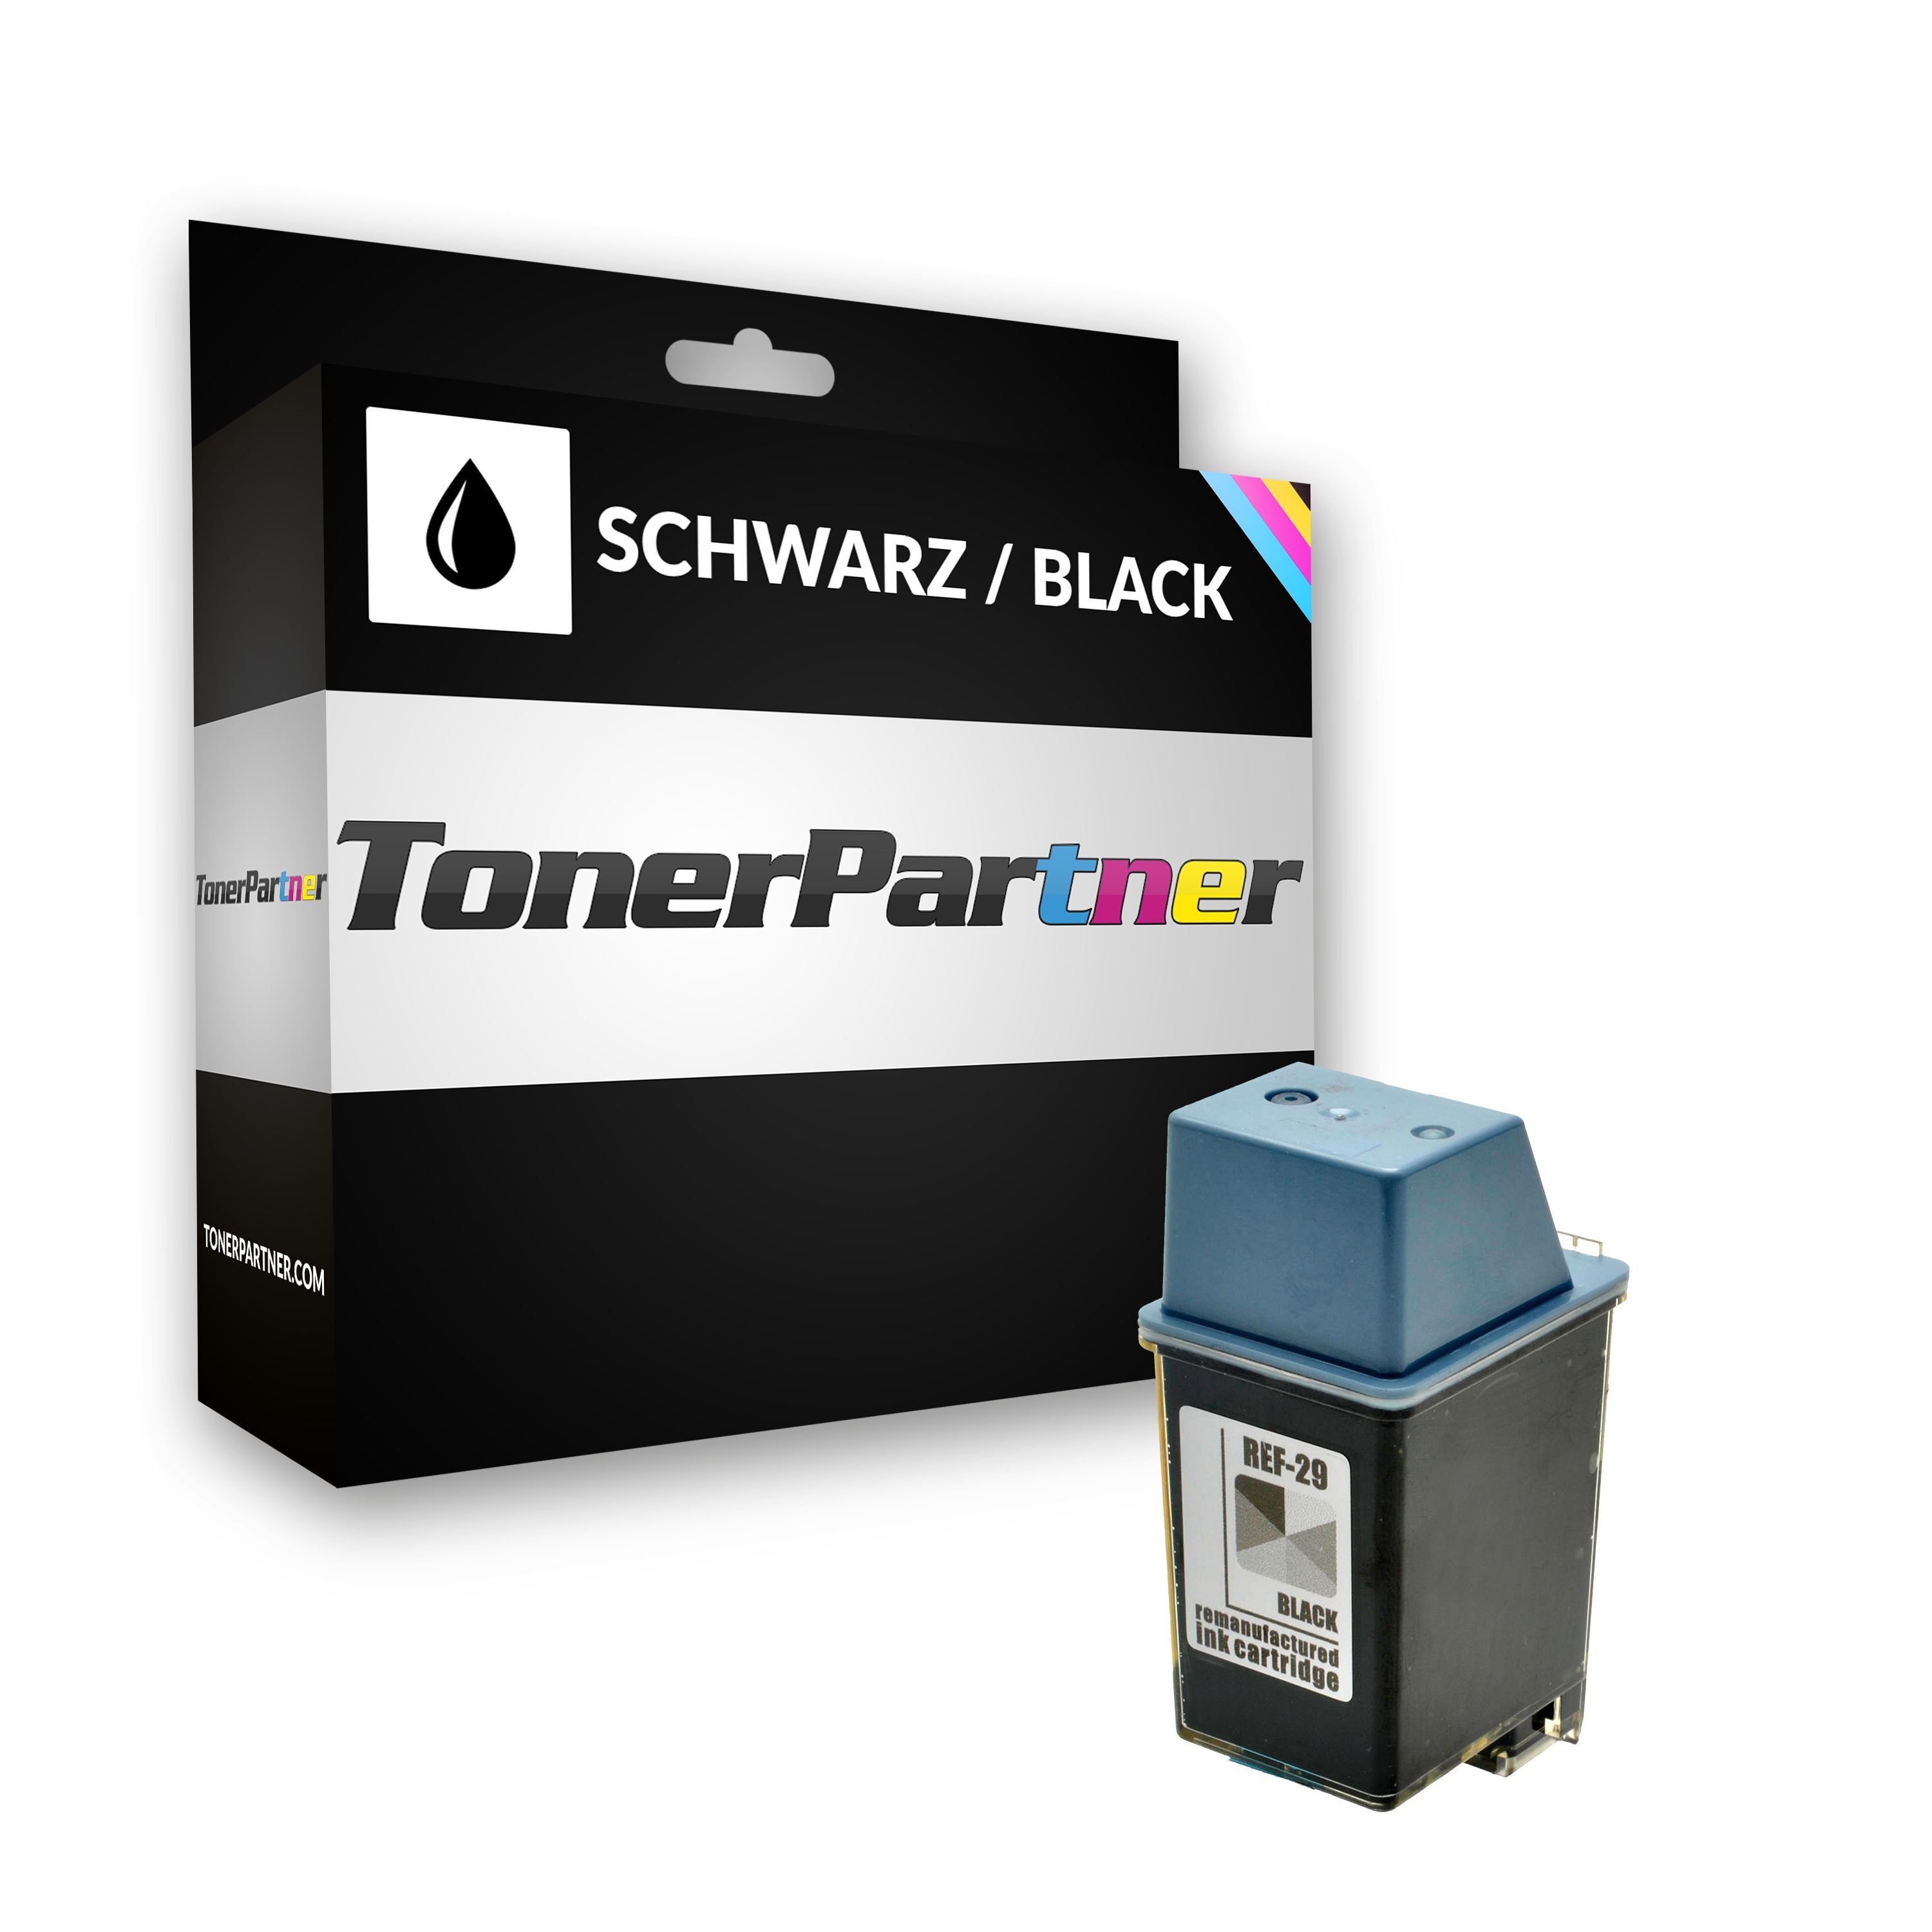 TonerPartner Kompatibel zu HP Deskwriter 690 Series Tintenpatrone (29 / 51629 AE) schwarz, 650 Seiten, 3,03 Rp pro Seite, Inhalt: 40 ml von TonerPartner